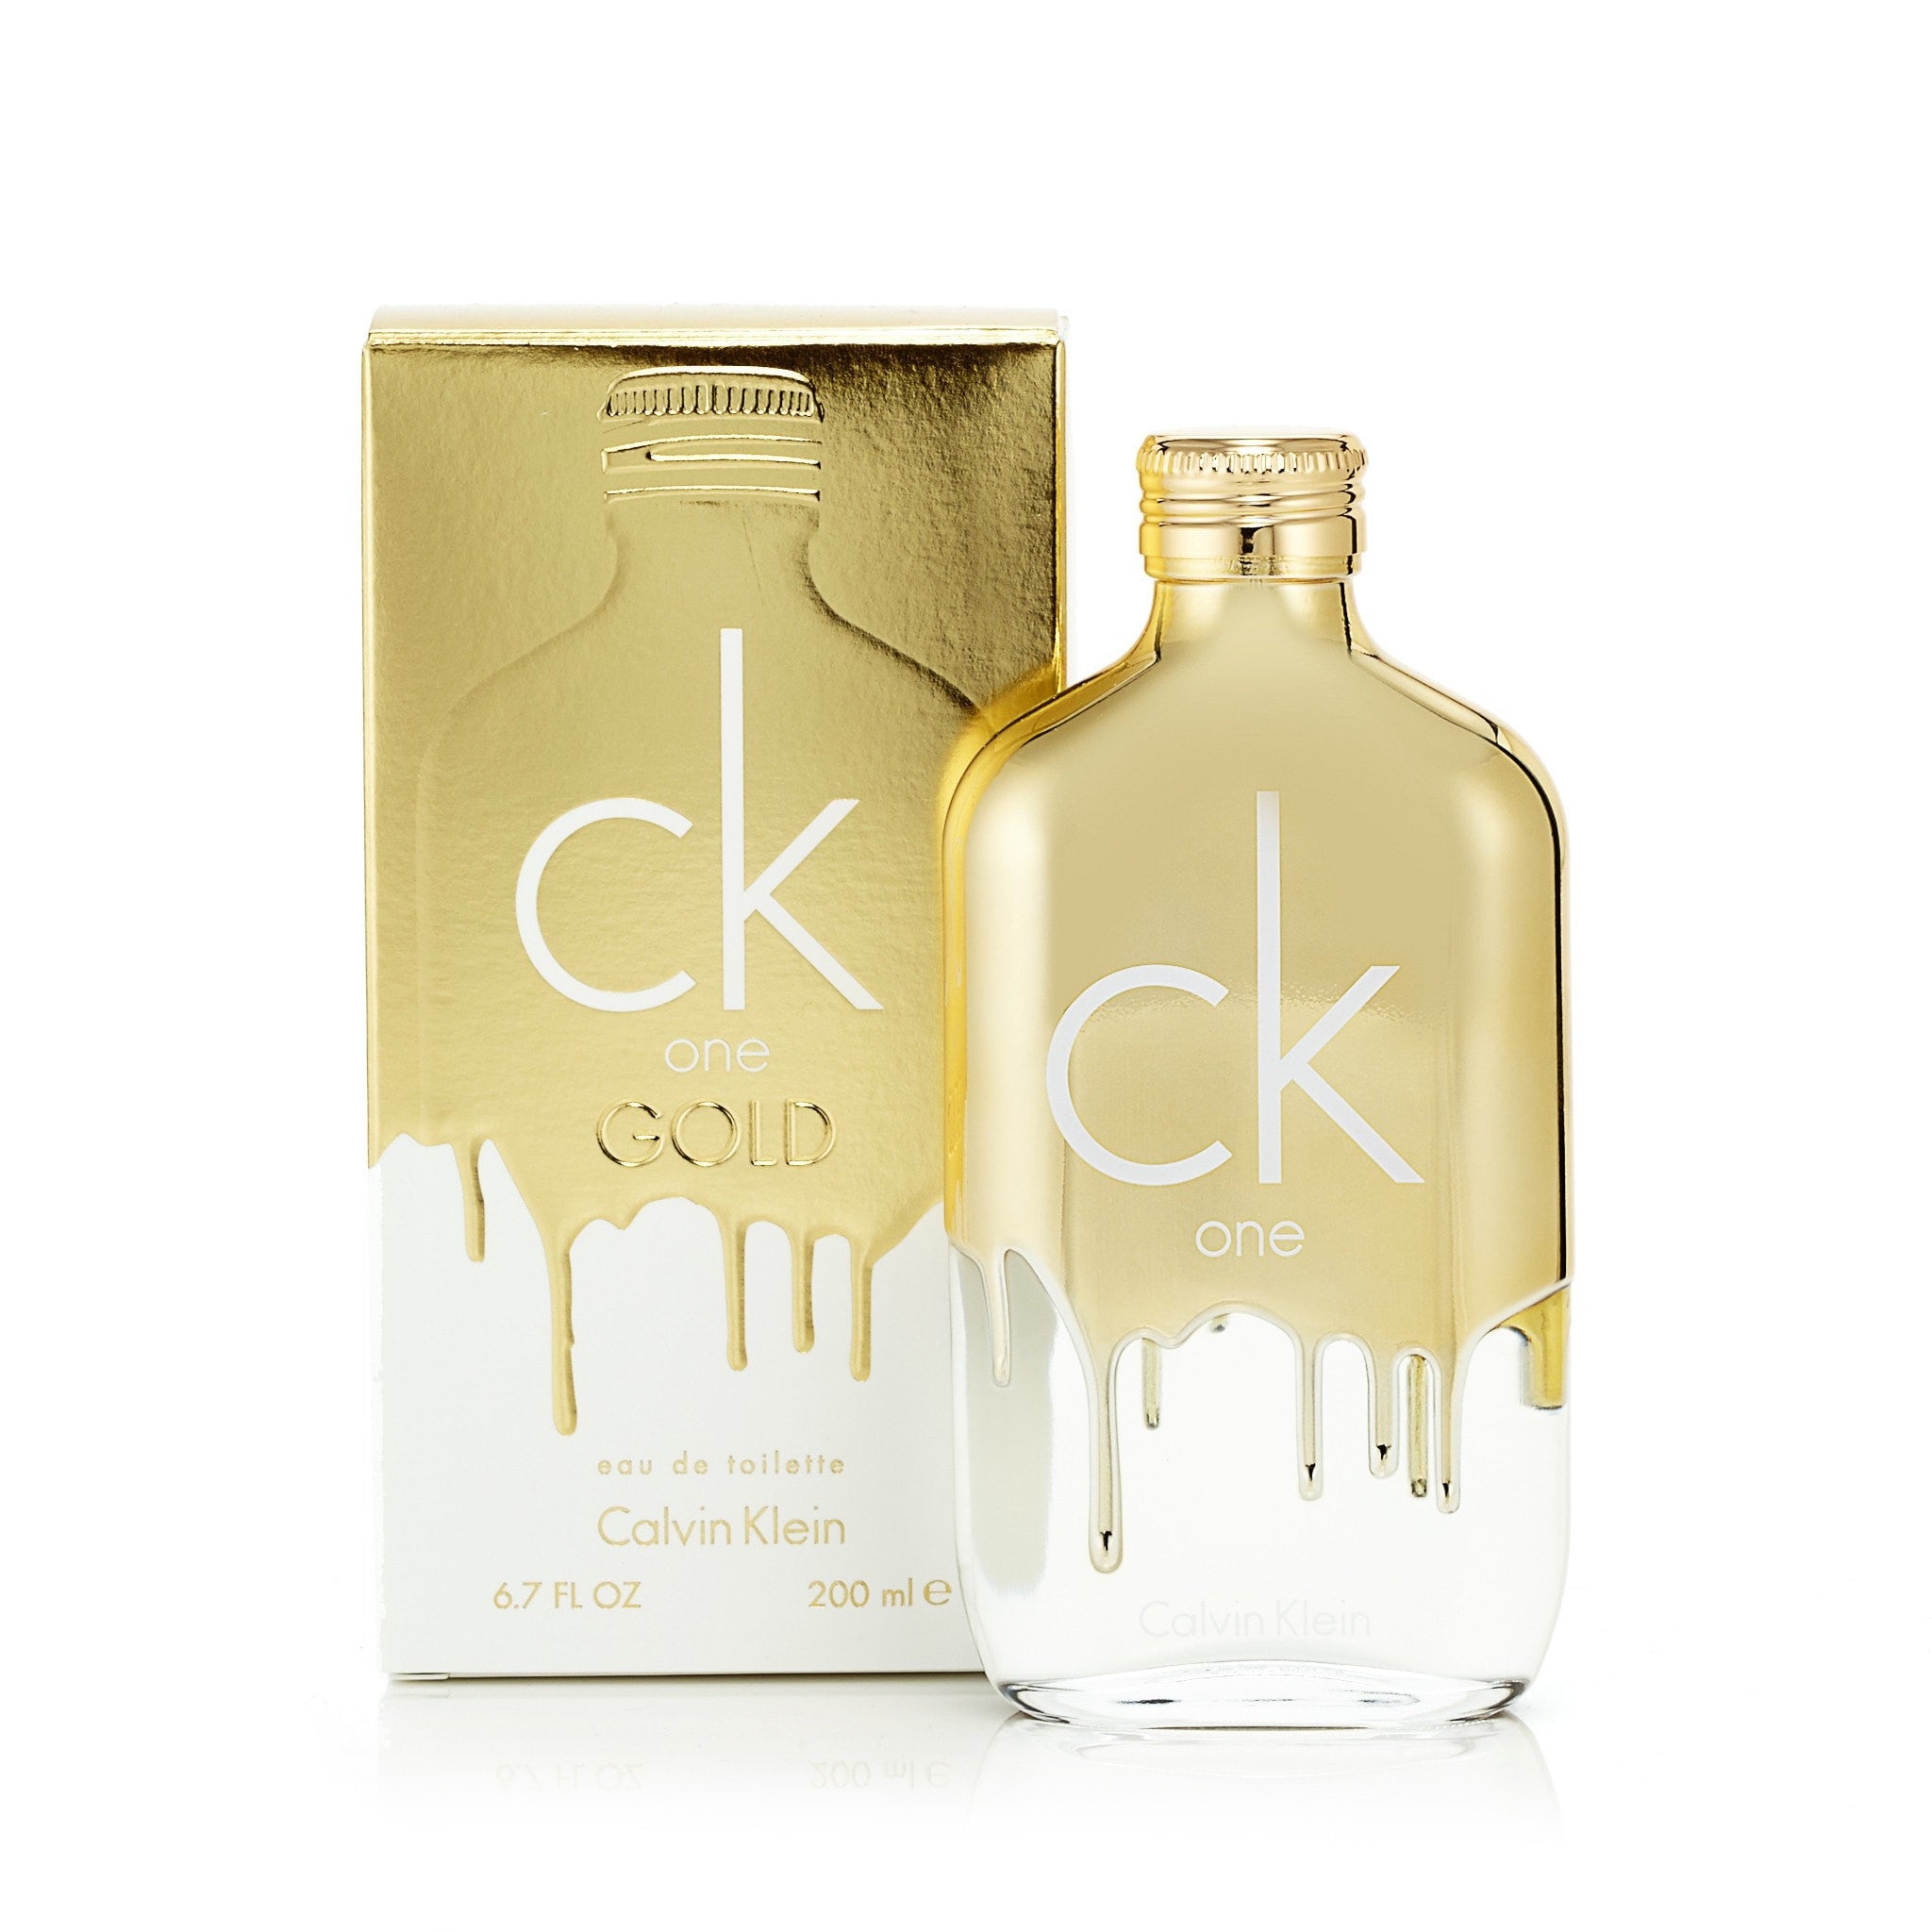 CK One EDT Spray 6.7 oz by Calvin Klein